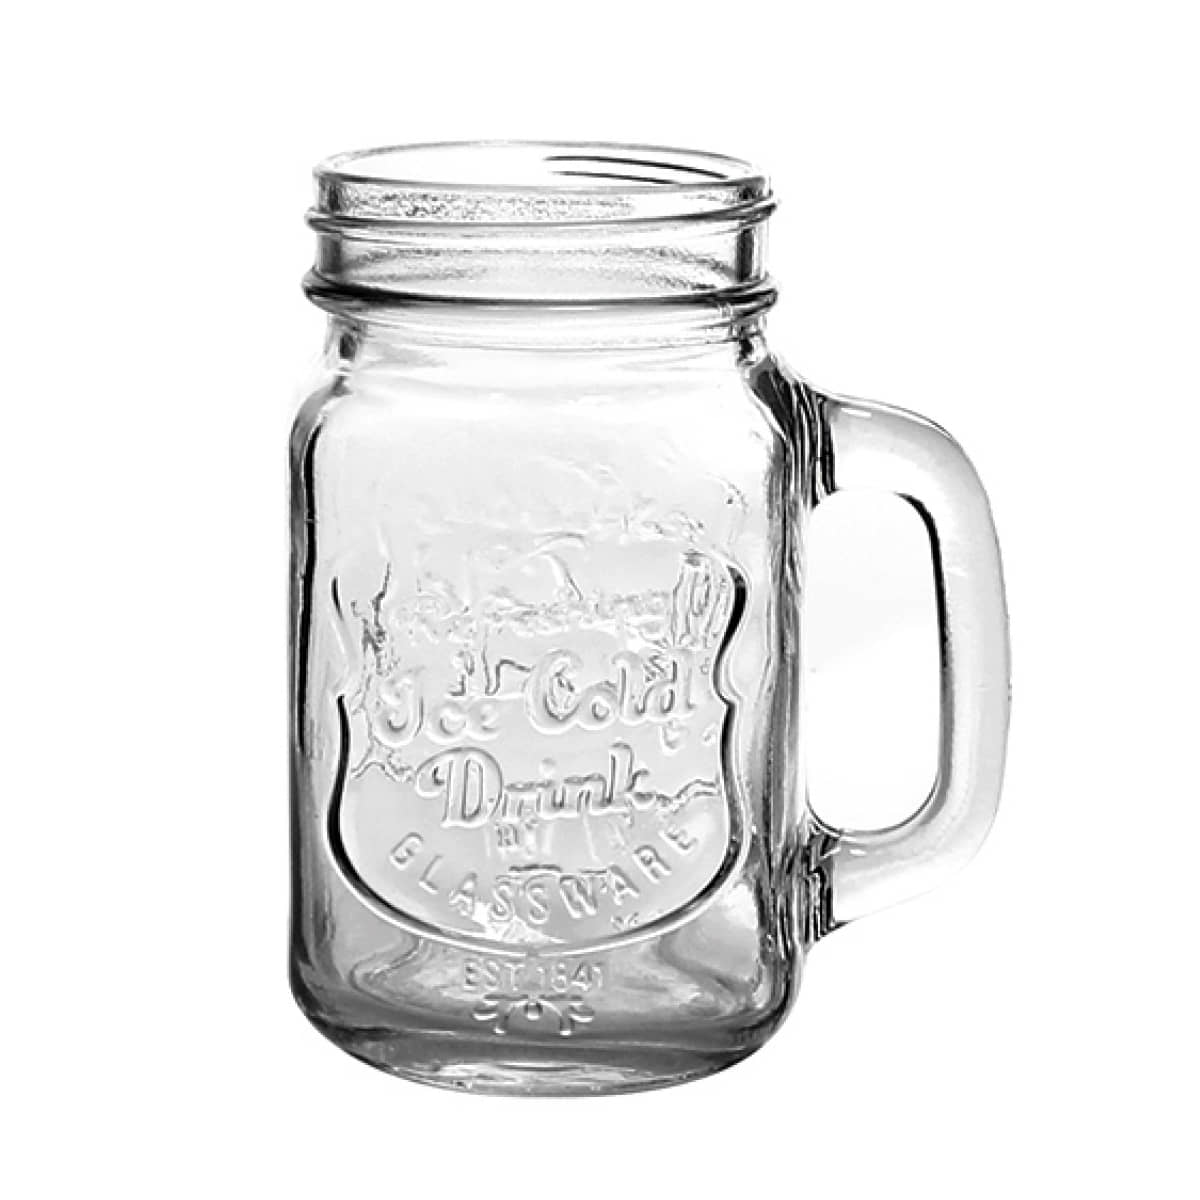 Drinking Jar aus Glas mit Gravur "Ice Cold Drink"